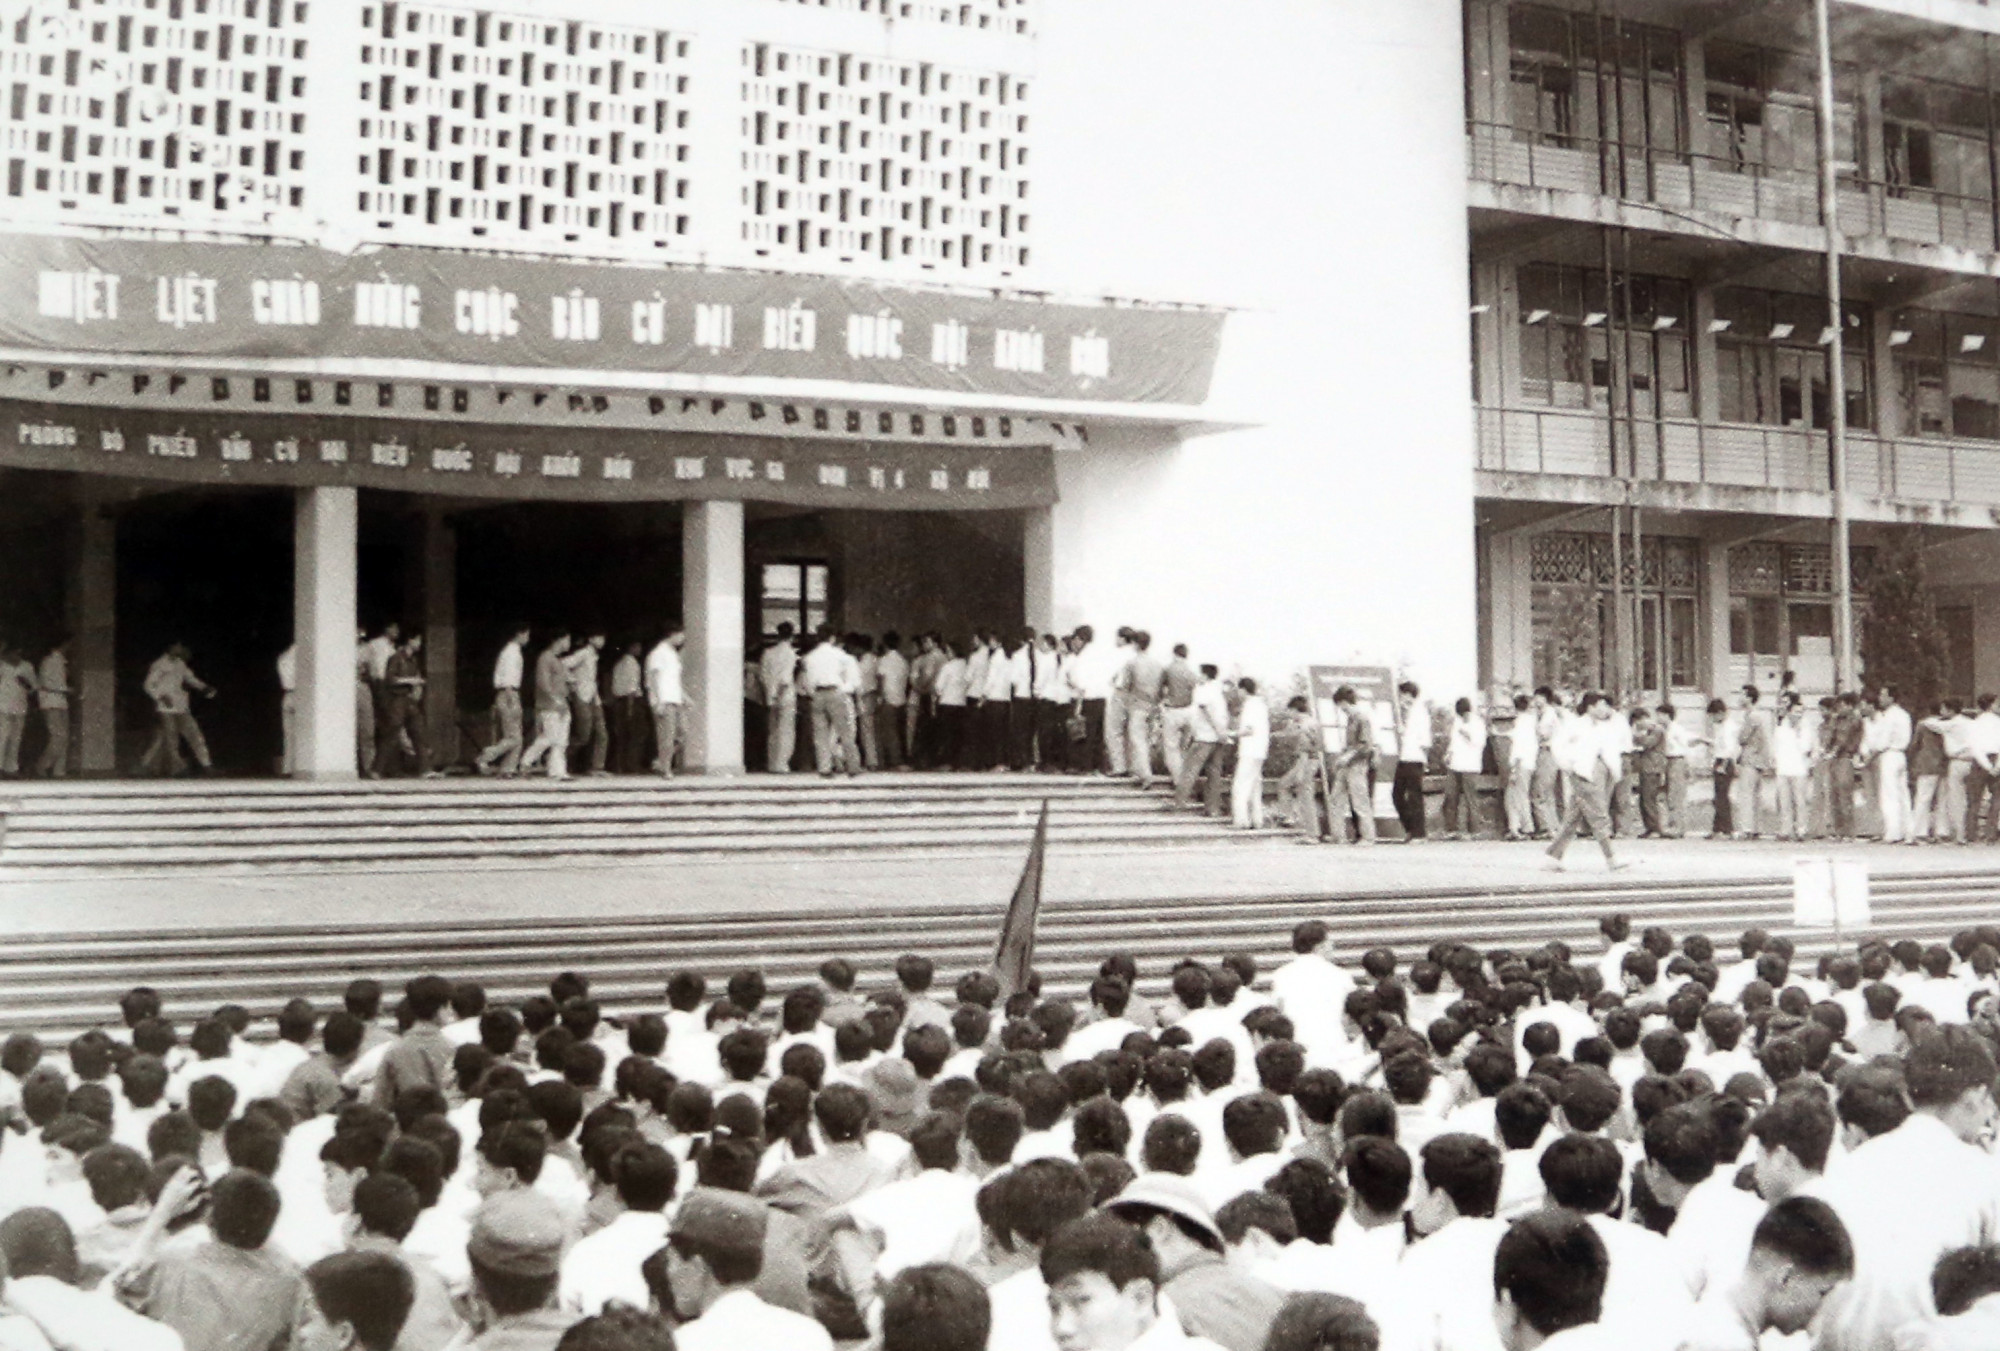 Quang cảnh buổi khai mạc bầu đại biểu Quốc hội khoá IV, tại khu vực bỏ phiếu Trường Đại học Quốc gia Hà Nội, tháng 4/1971.